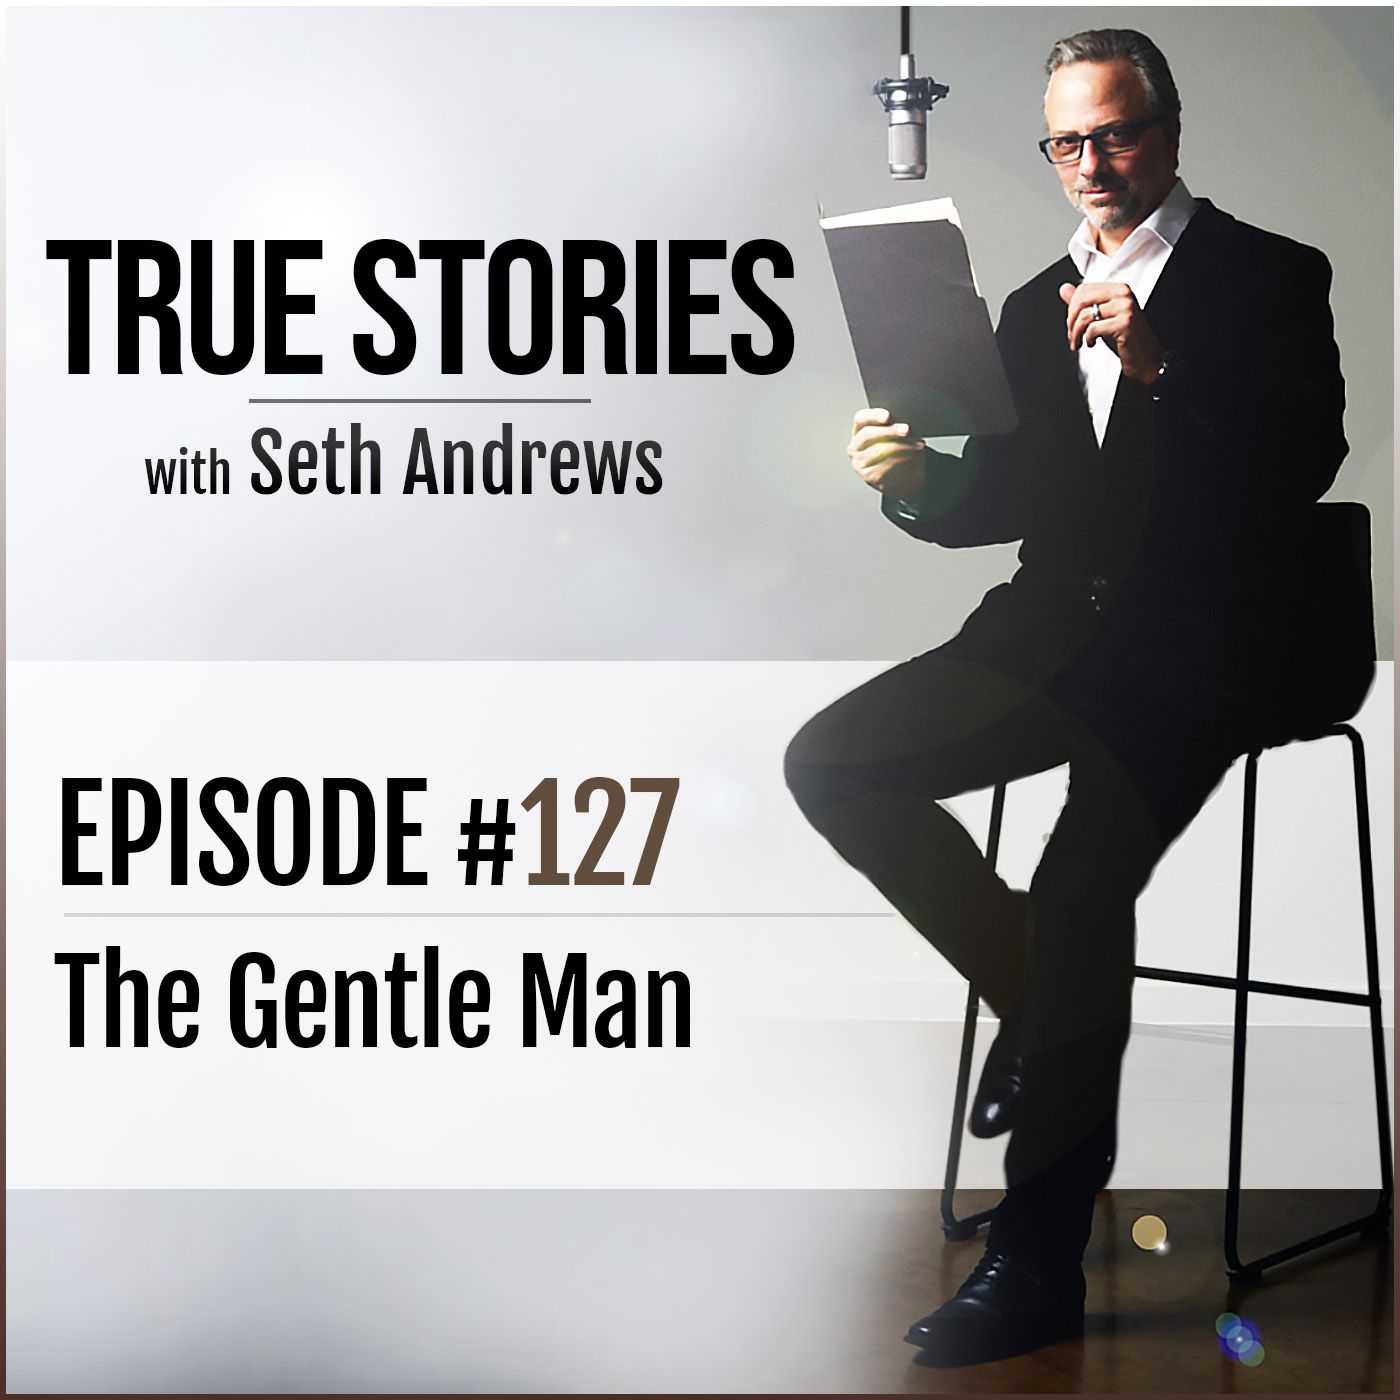 True Stories #127 - The Gentle Man